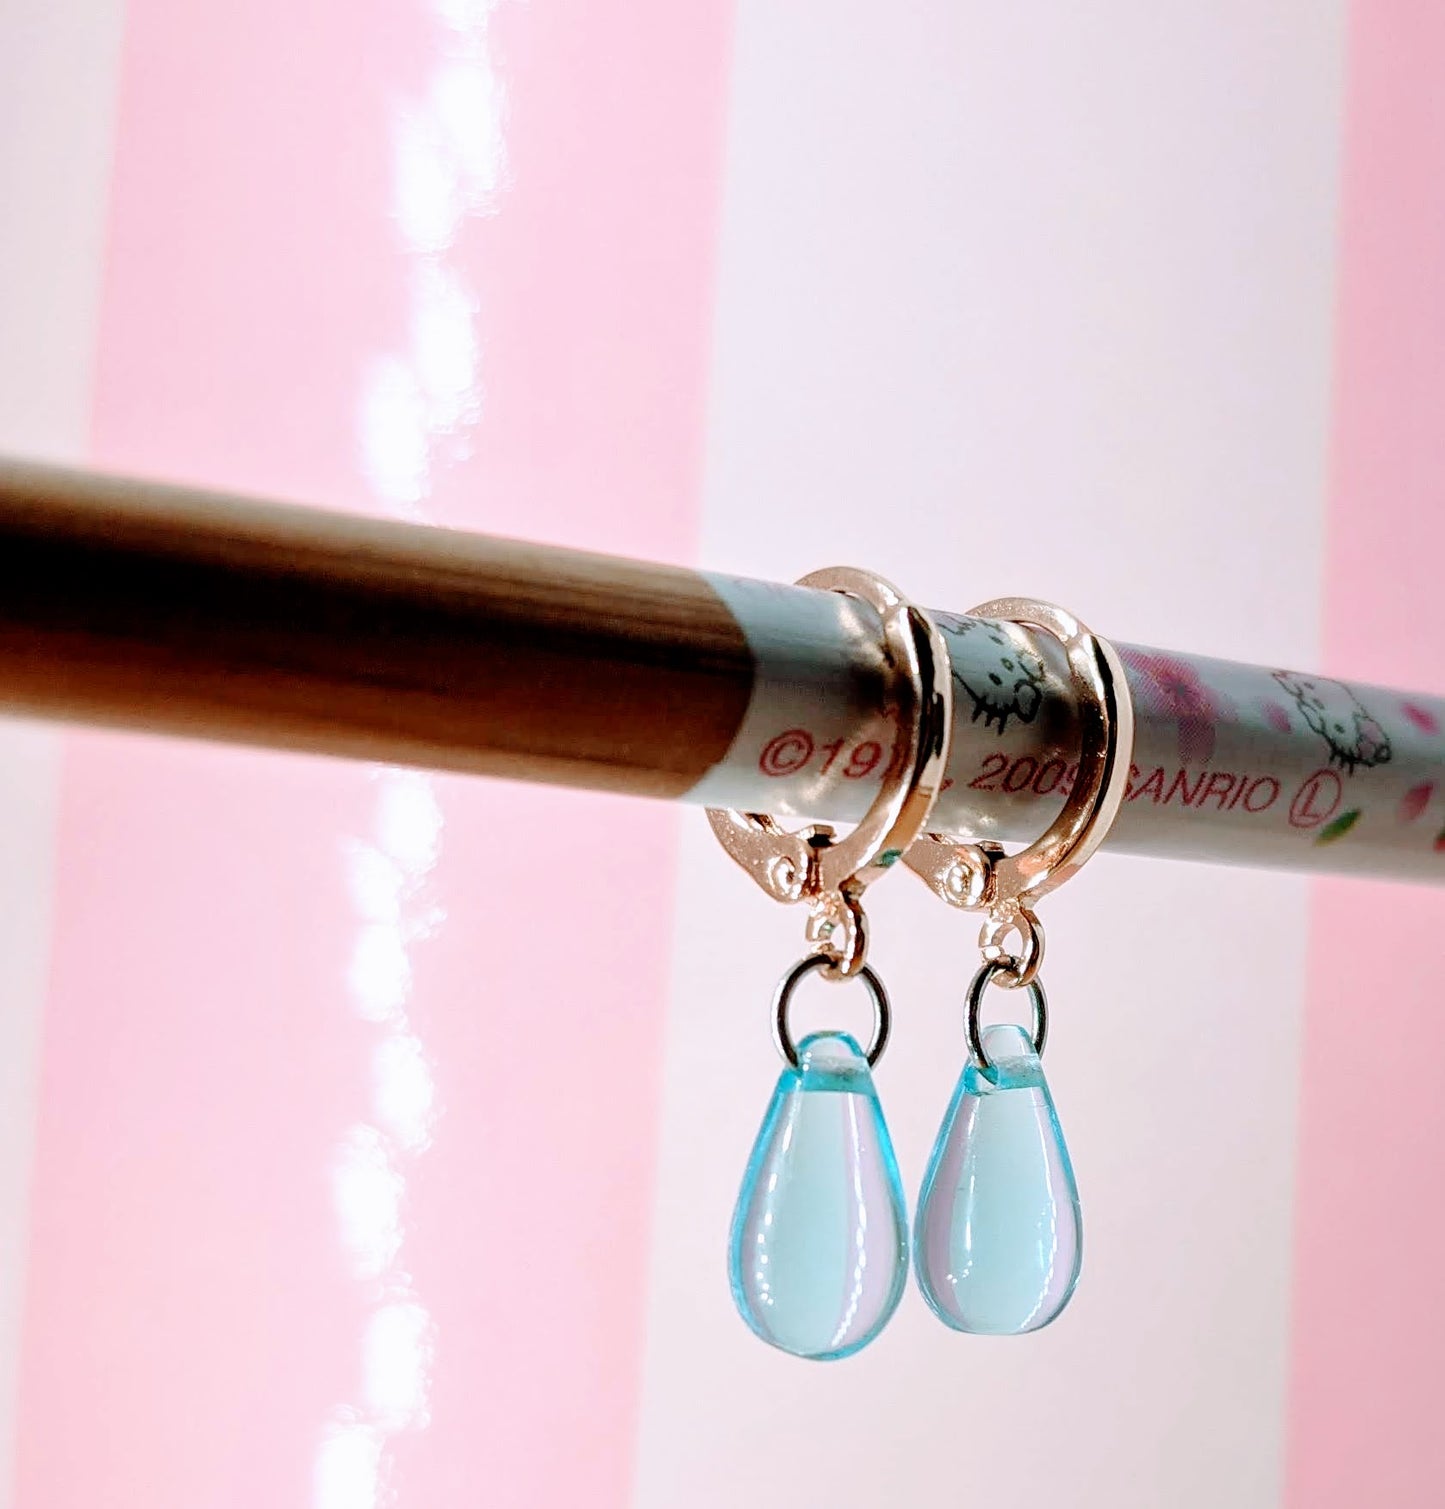 Howl Sophie Inspired Vintage Huggie Hoop Earrings Cosplay Jewelry Moving Castle Wedding Blue Crystal Bead Earring Best Gift Idea